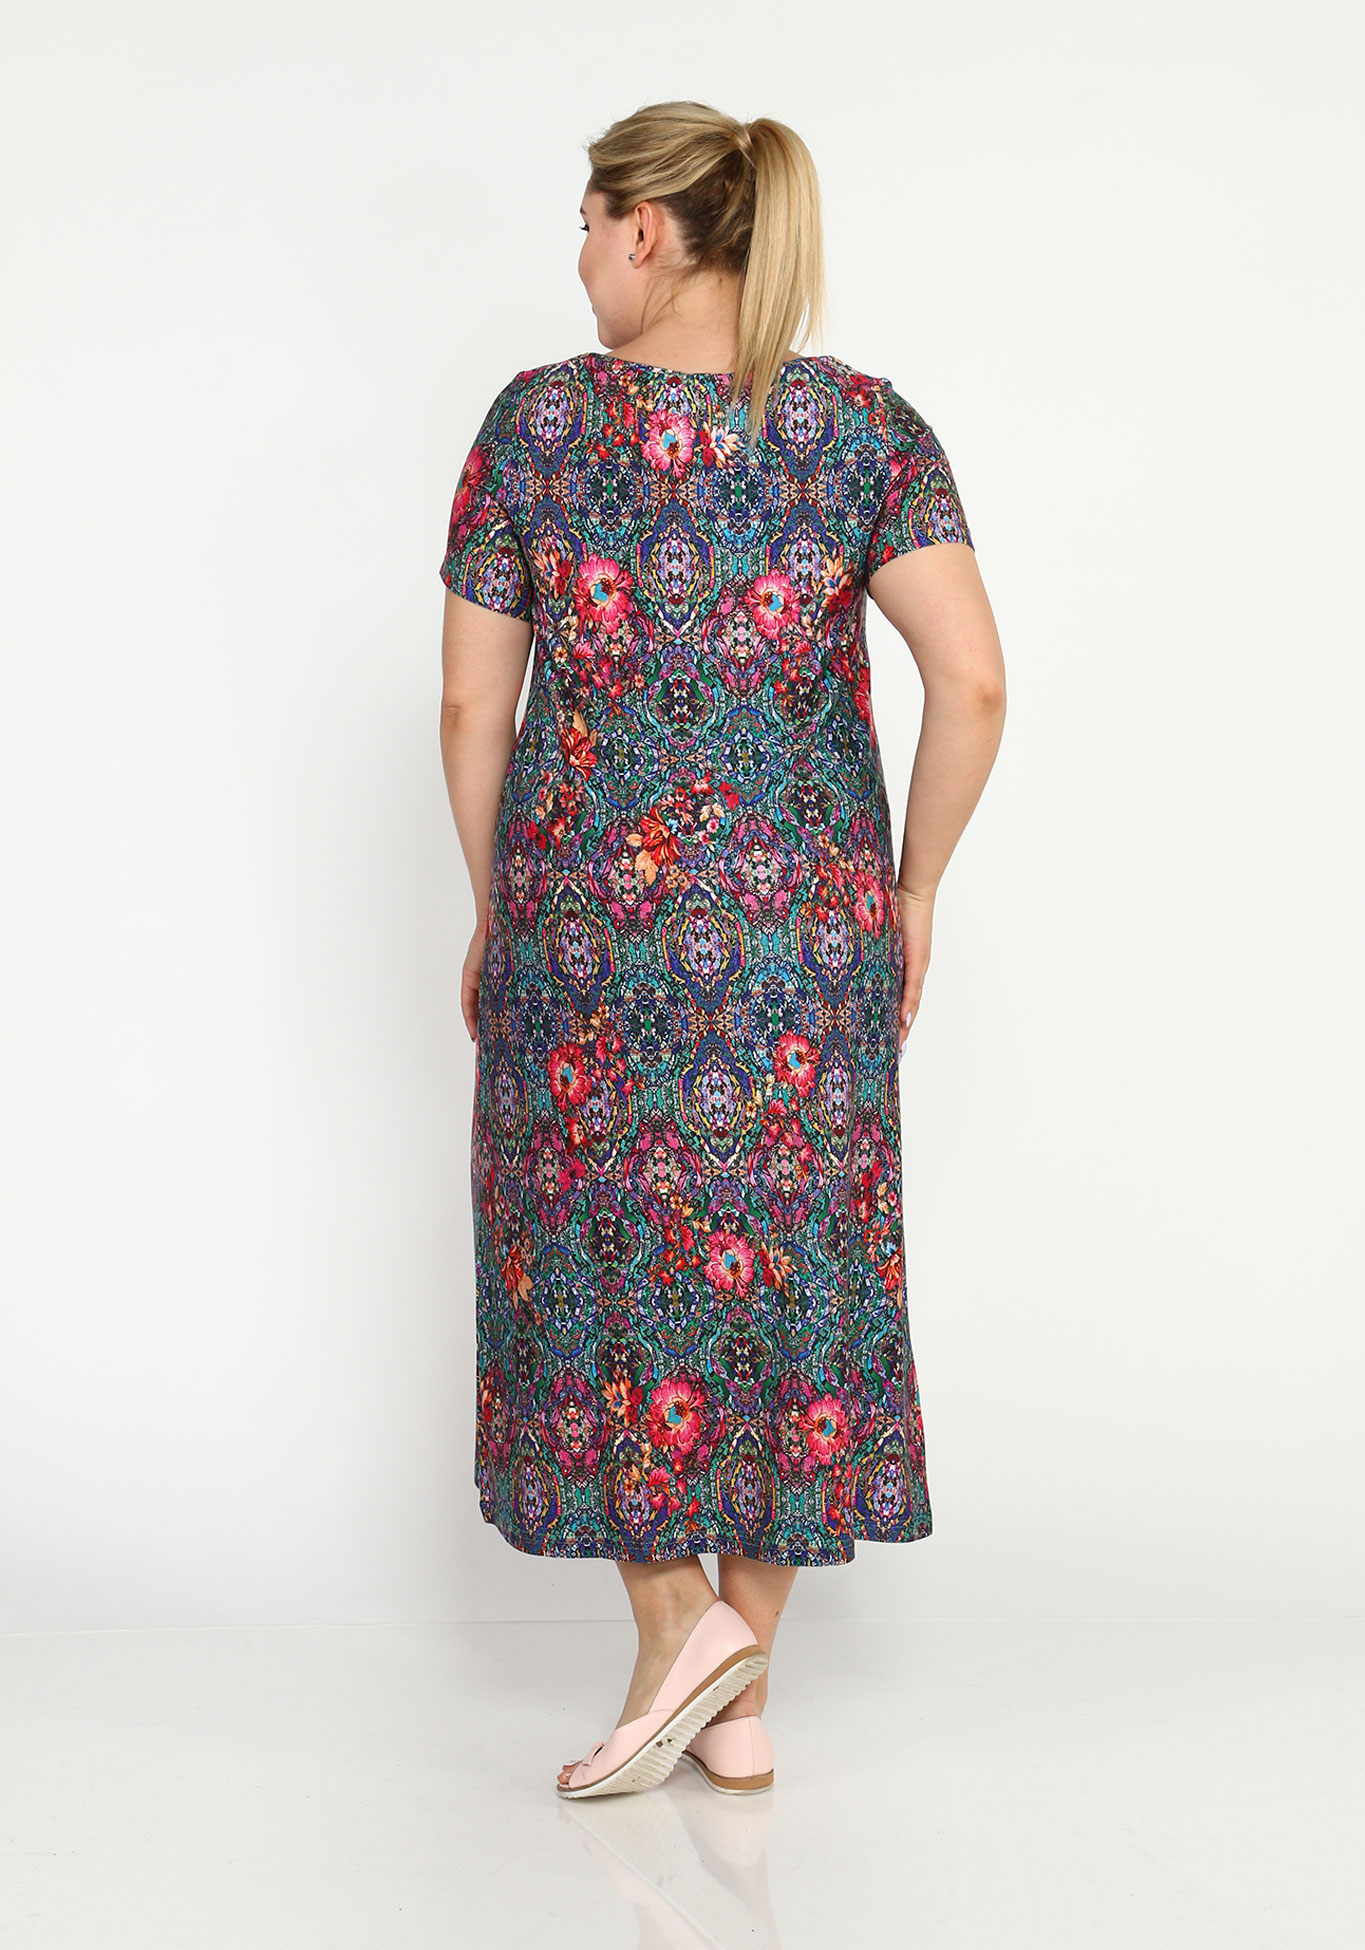 Платье прямое с принтом и короткими рукавами Синель, размер 46, цвет сине-розовый - фото 7